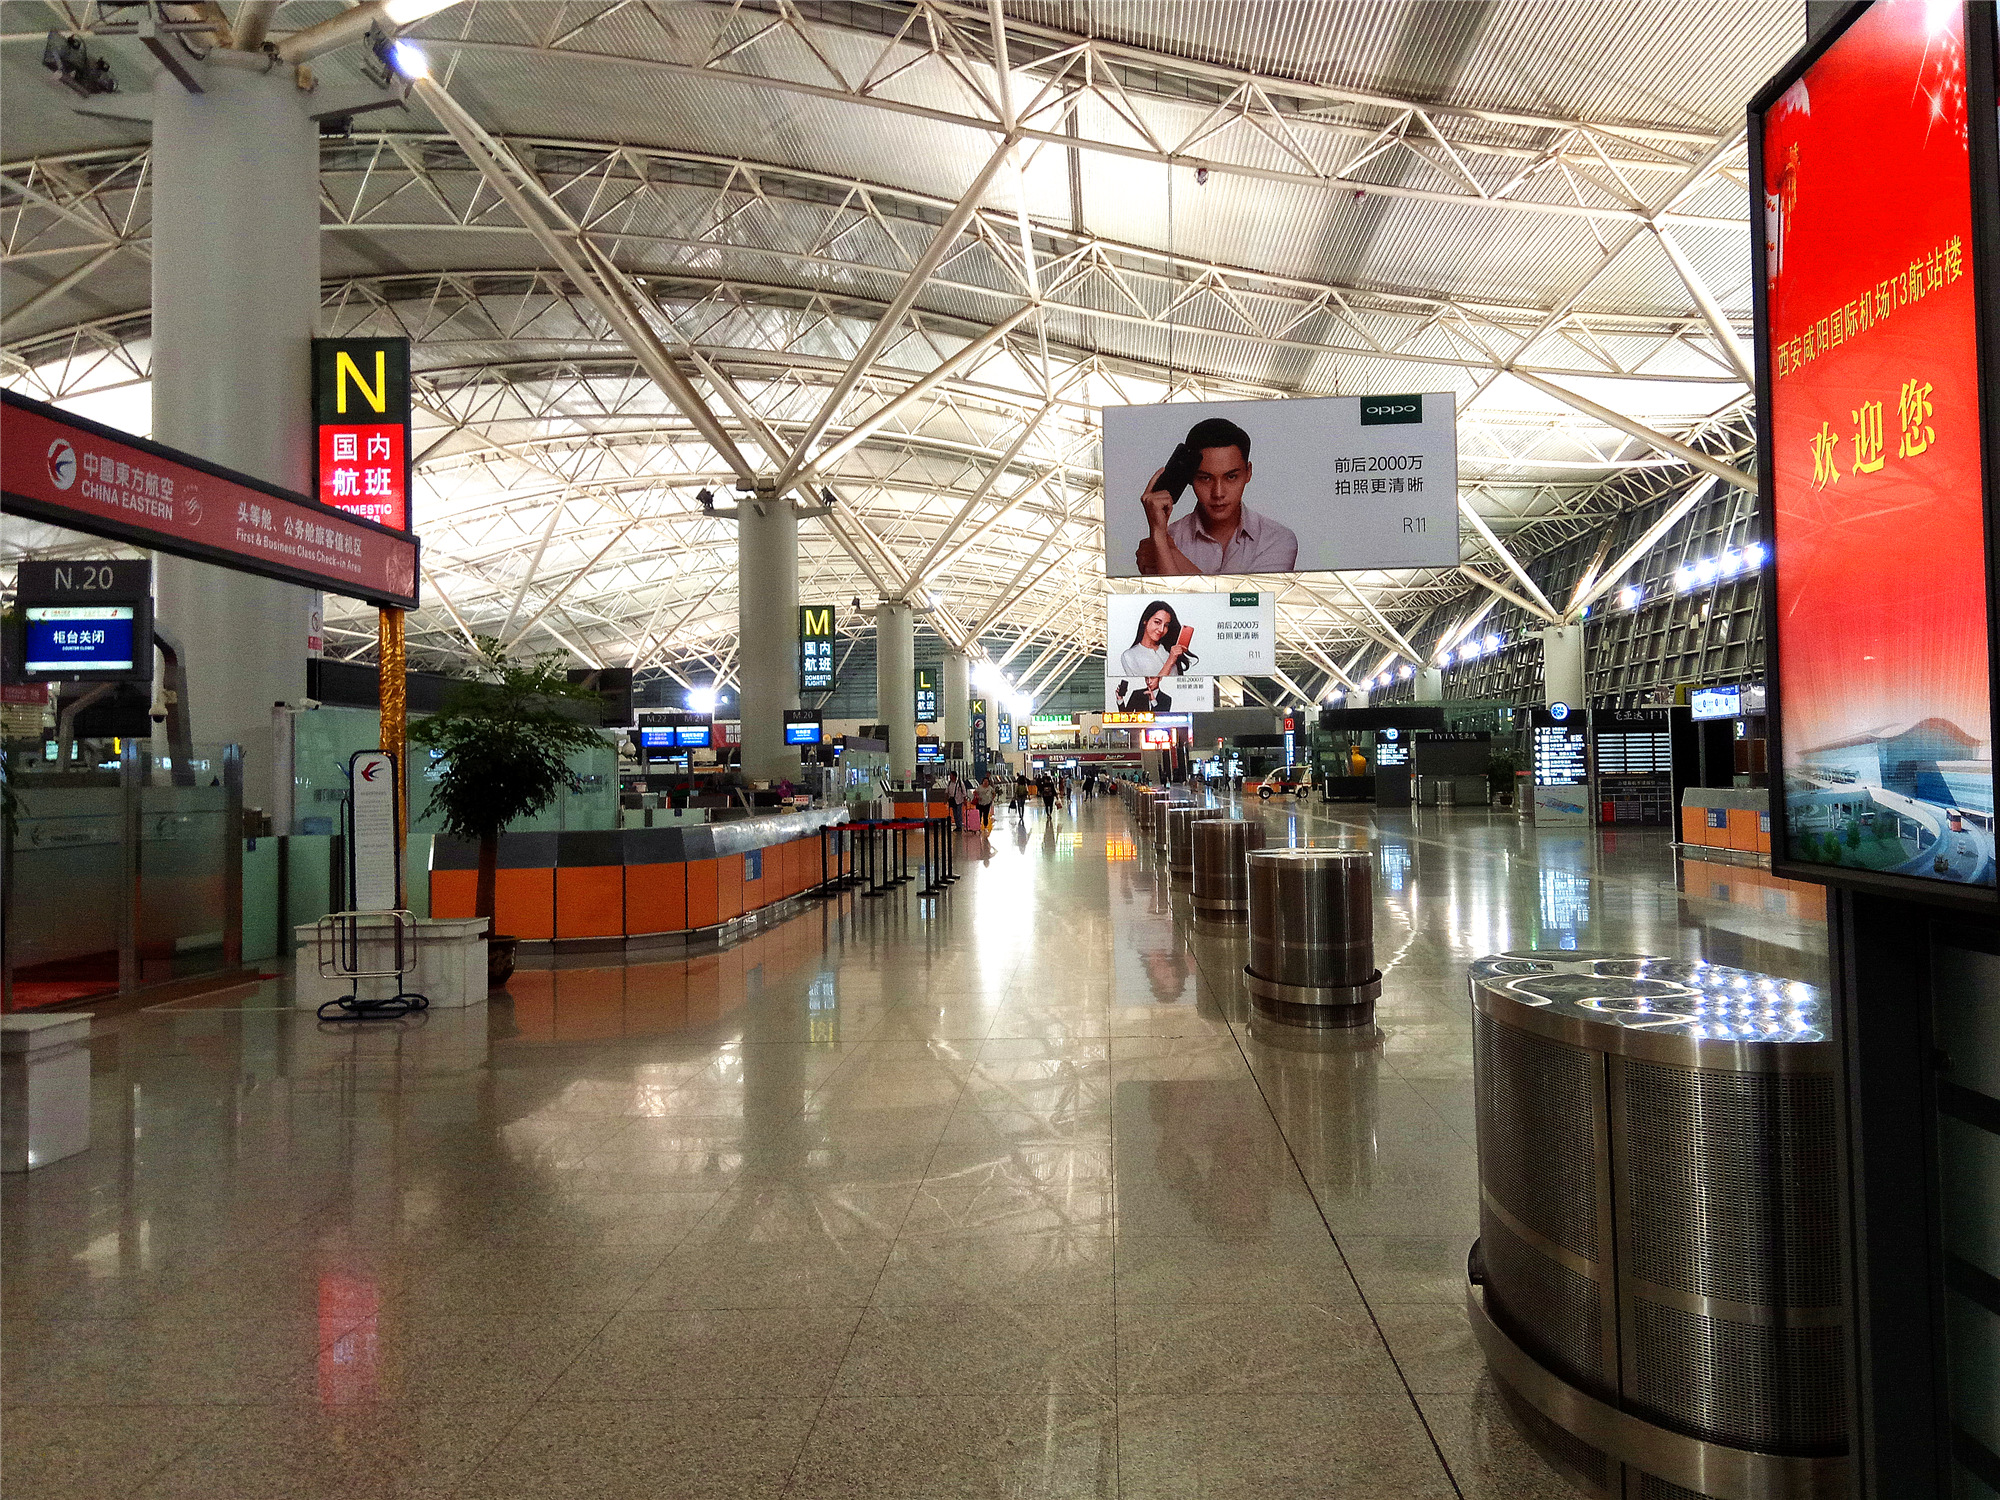 夜宿西安咸阳机场是怎样的体验?真实照片告诉你真实的